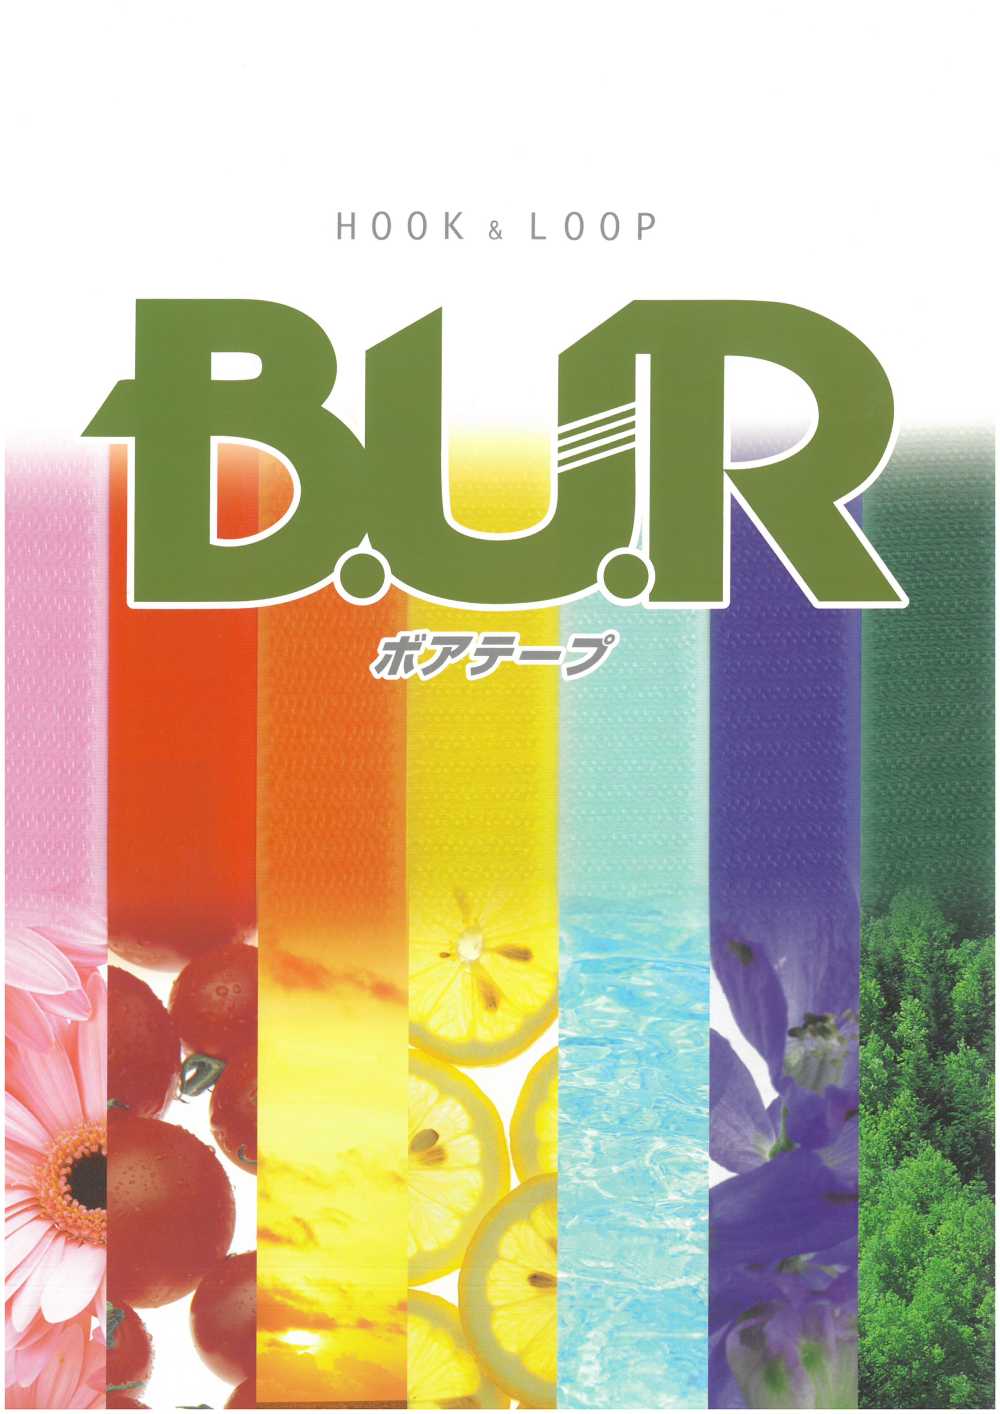 JBL Boa Tape – Crochet Et Boucle, Côté B (Type De Boucle), Nylon, Type Normal Pour La Couture[Fermeture éclair] B.U.R.